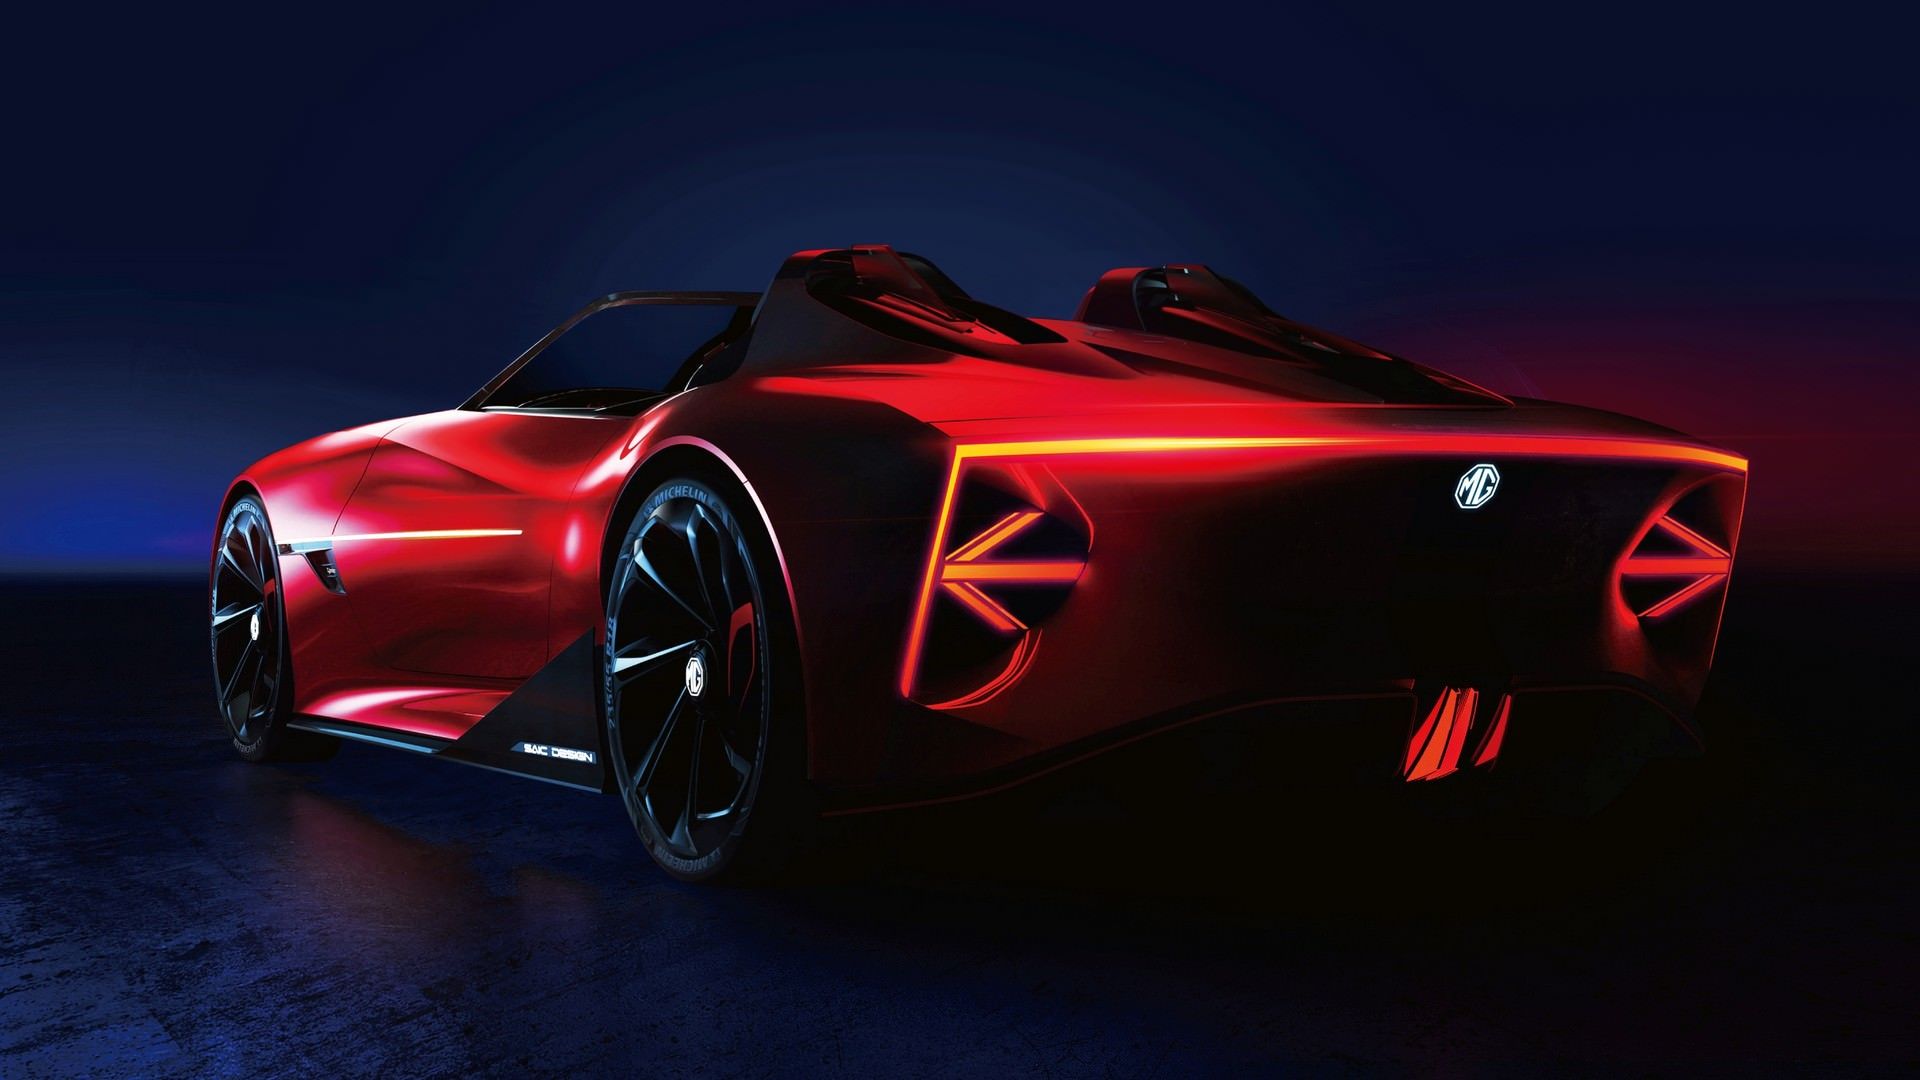 نمای سه چهارم عقب خودروی مفهومی  و برقی ام جی سایبرستر / MG Cyberster Concept قرمز رنگ